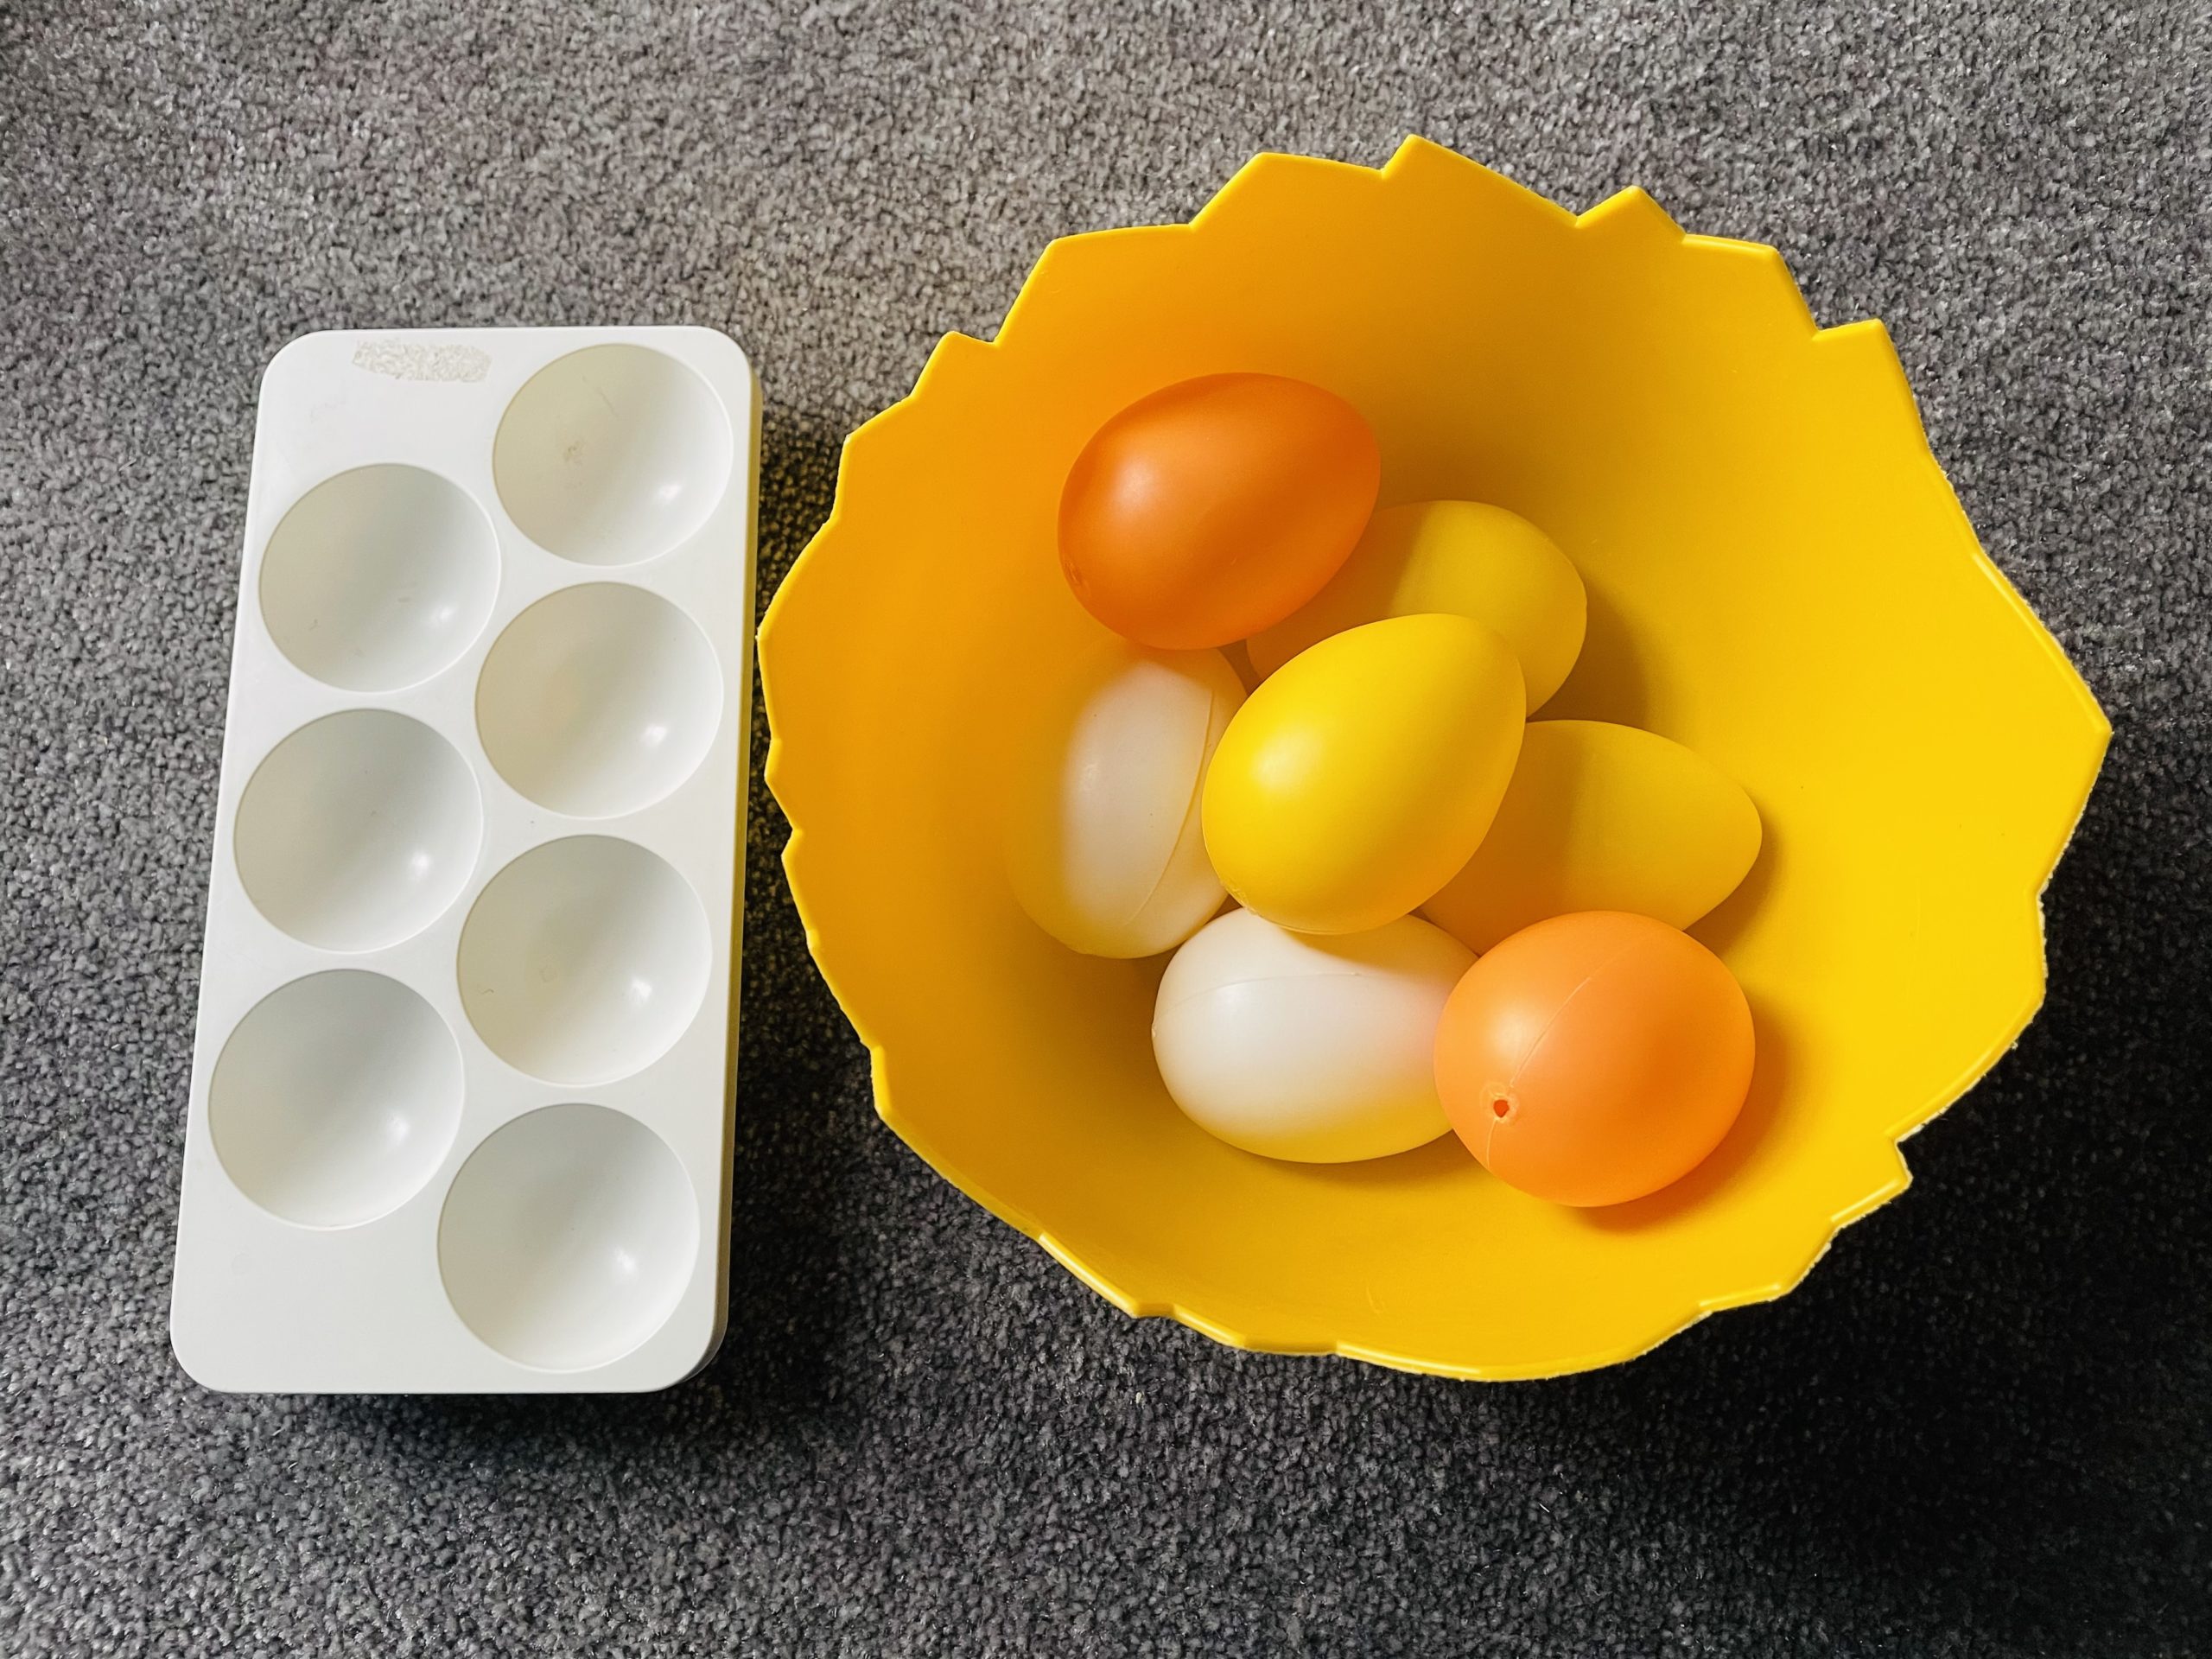 Bild zum Schritt 4 für die Kinder-Beschäftigung: 'Verwendet so viele Plastikeier, wie in euren Eierhalter hinein passen.'